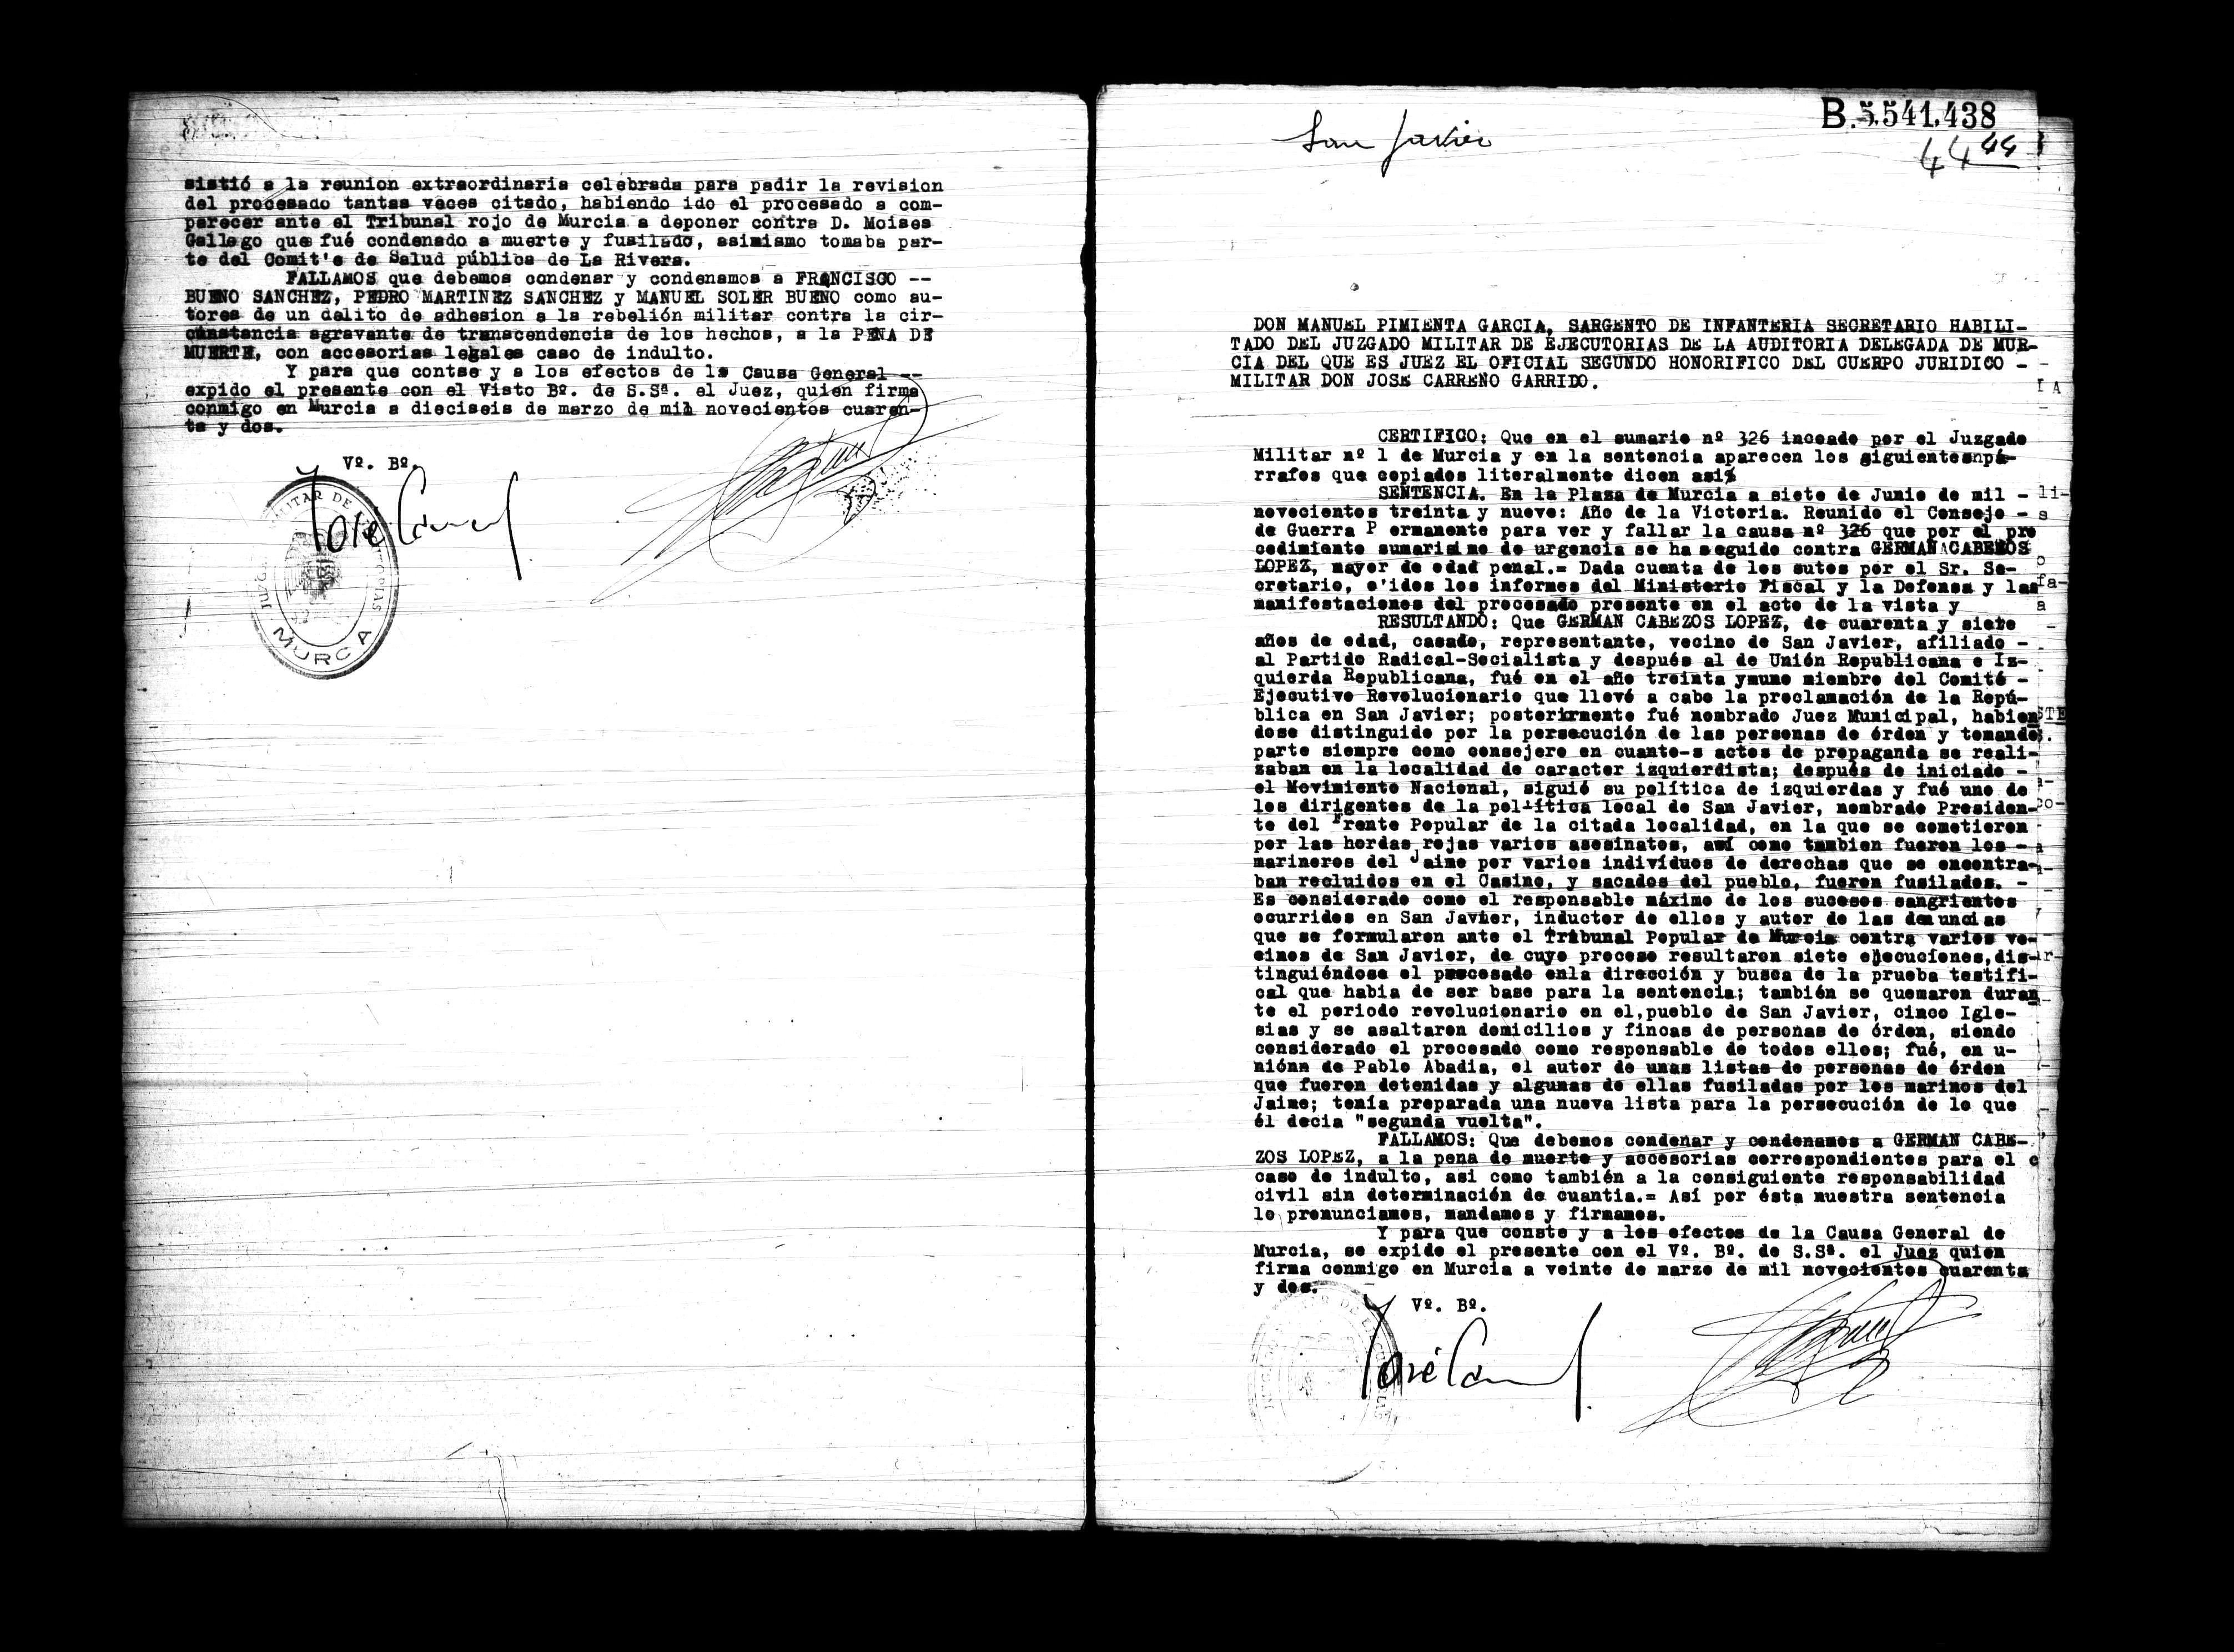 Certificado de la sentencia pronunciada contra Germán Cabezos López, causa 326, el 7 de junio de 1939 en Murcia.